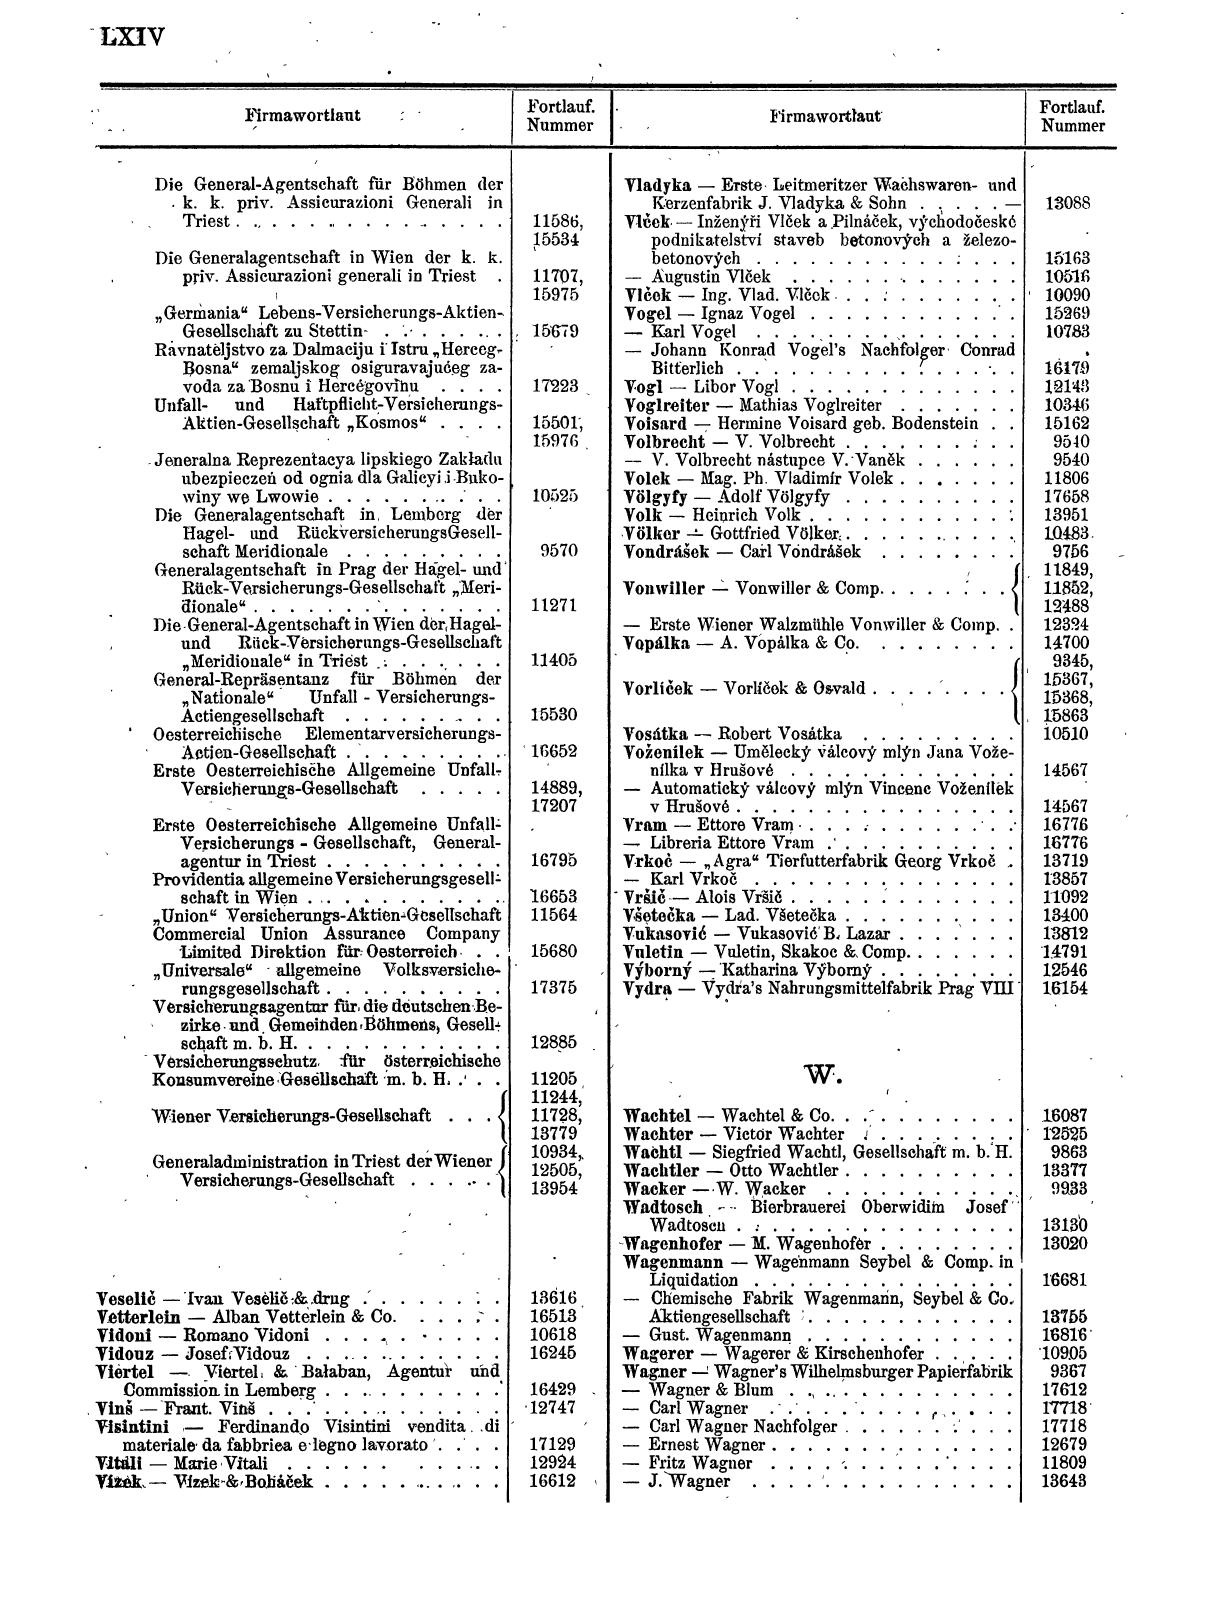 Zentralblatt für die Eintragungen in das Handelsregister 1913, Teil 2 - Seite 68